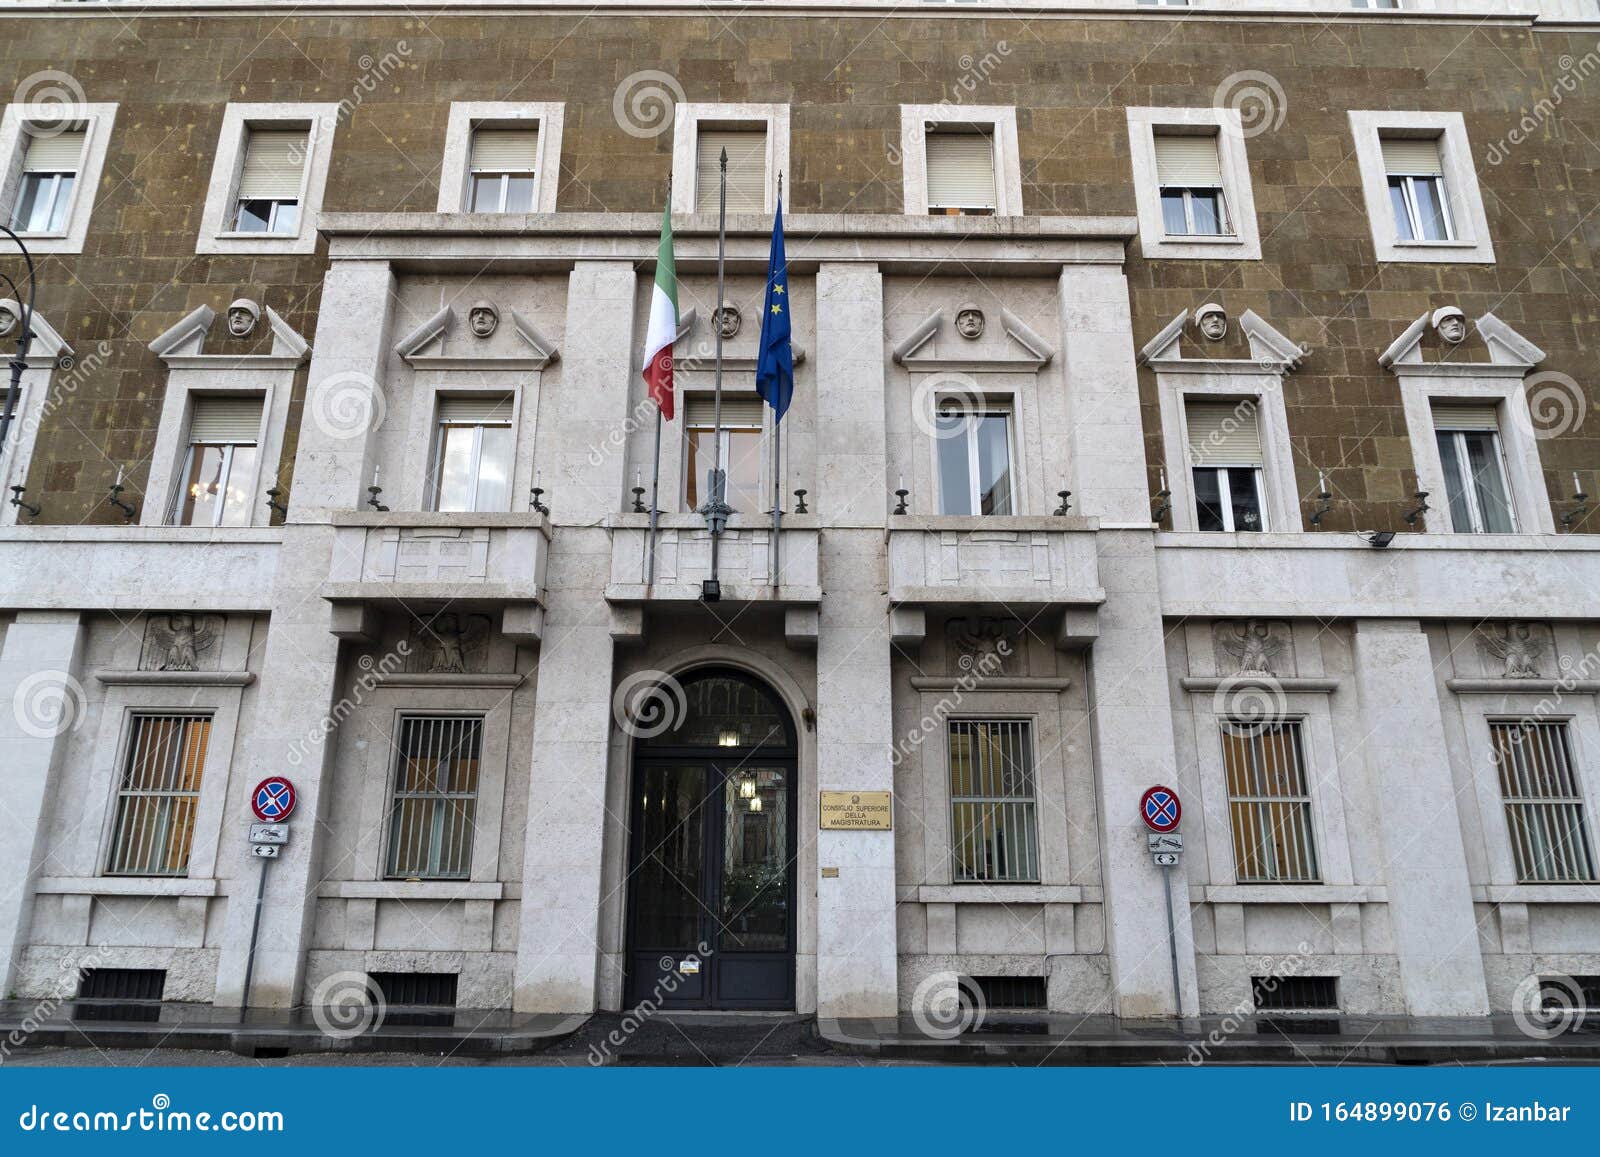 consiglio superiore della magistratura judicial building in rome